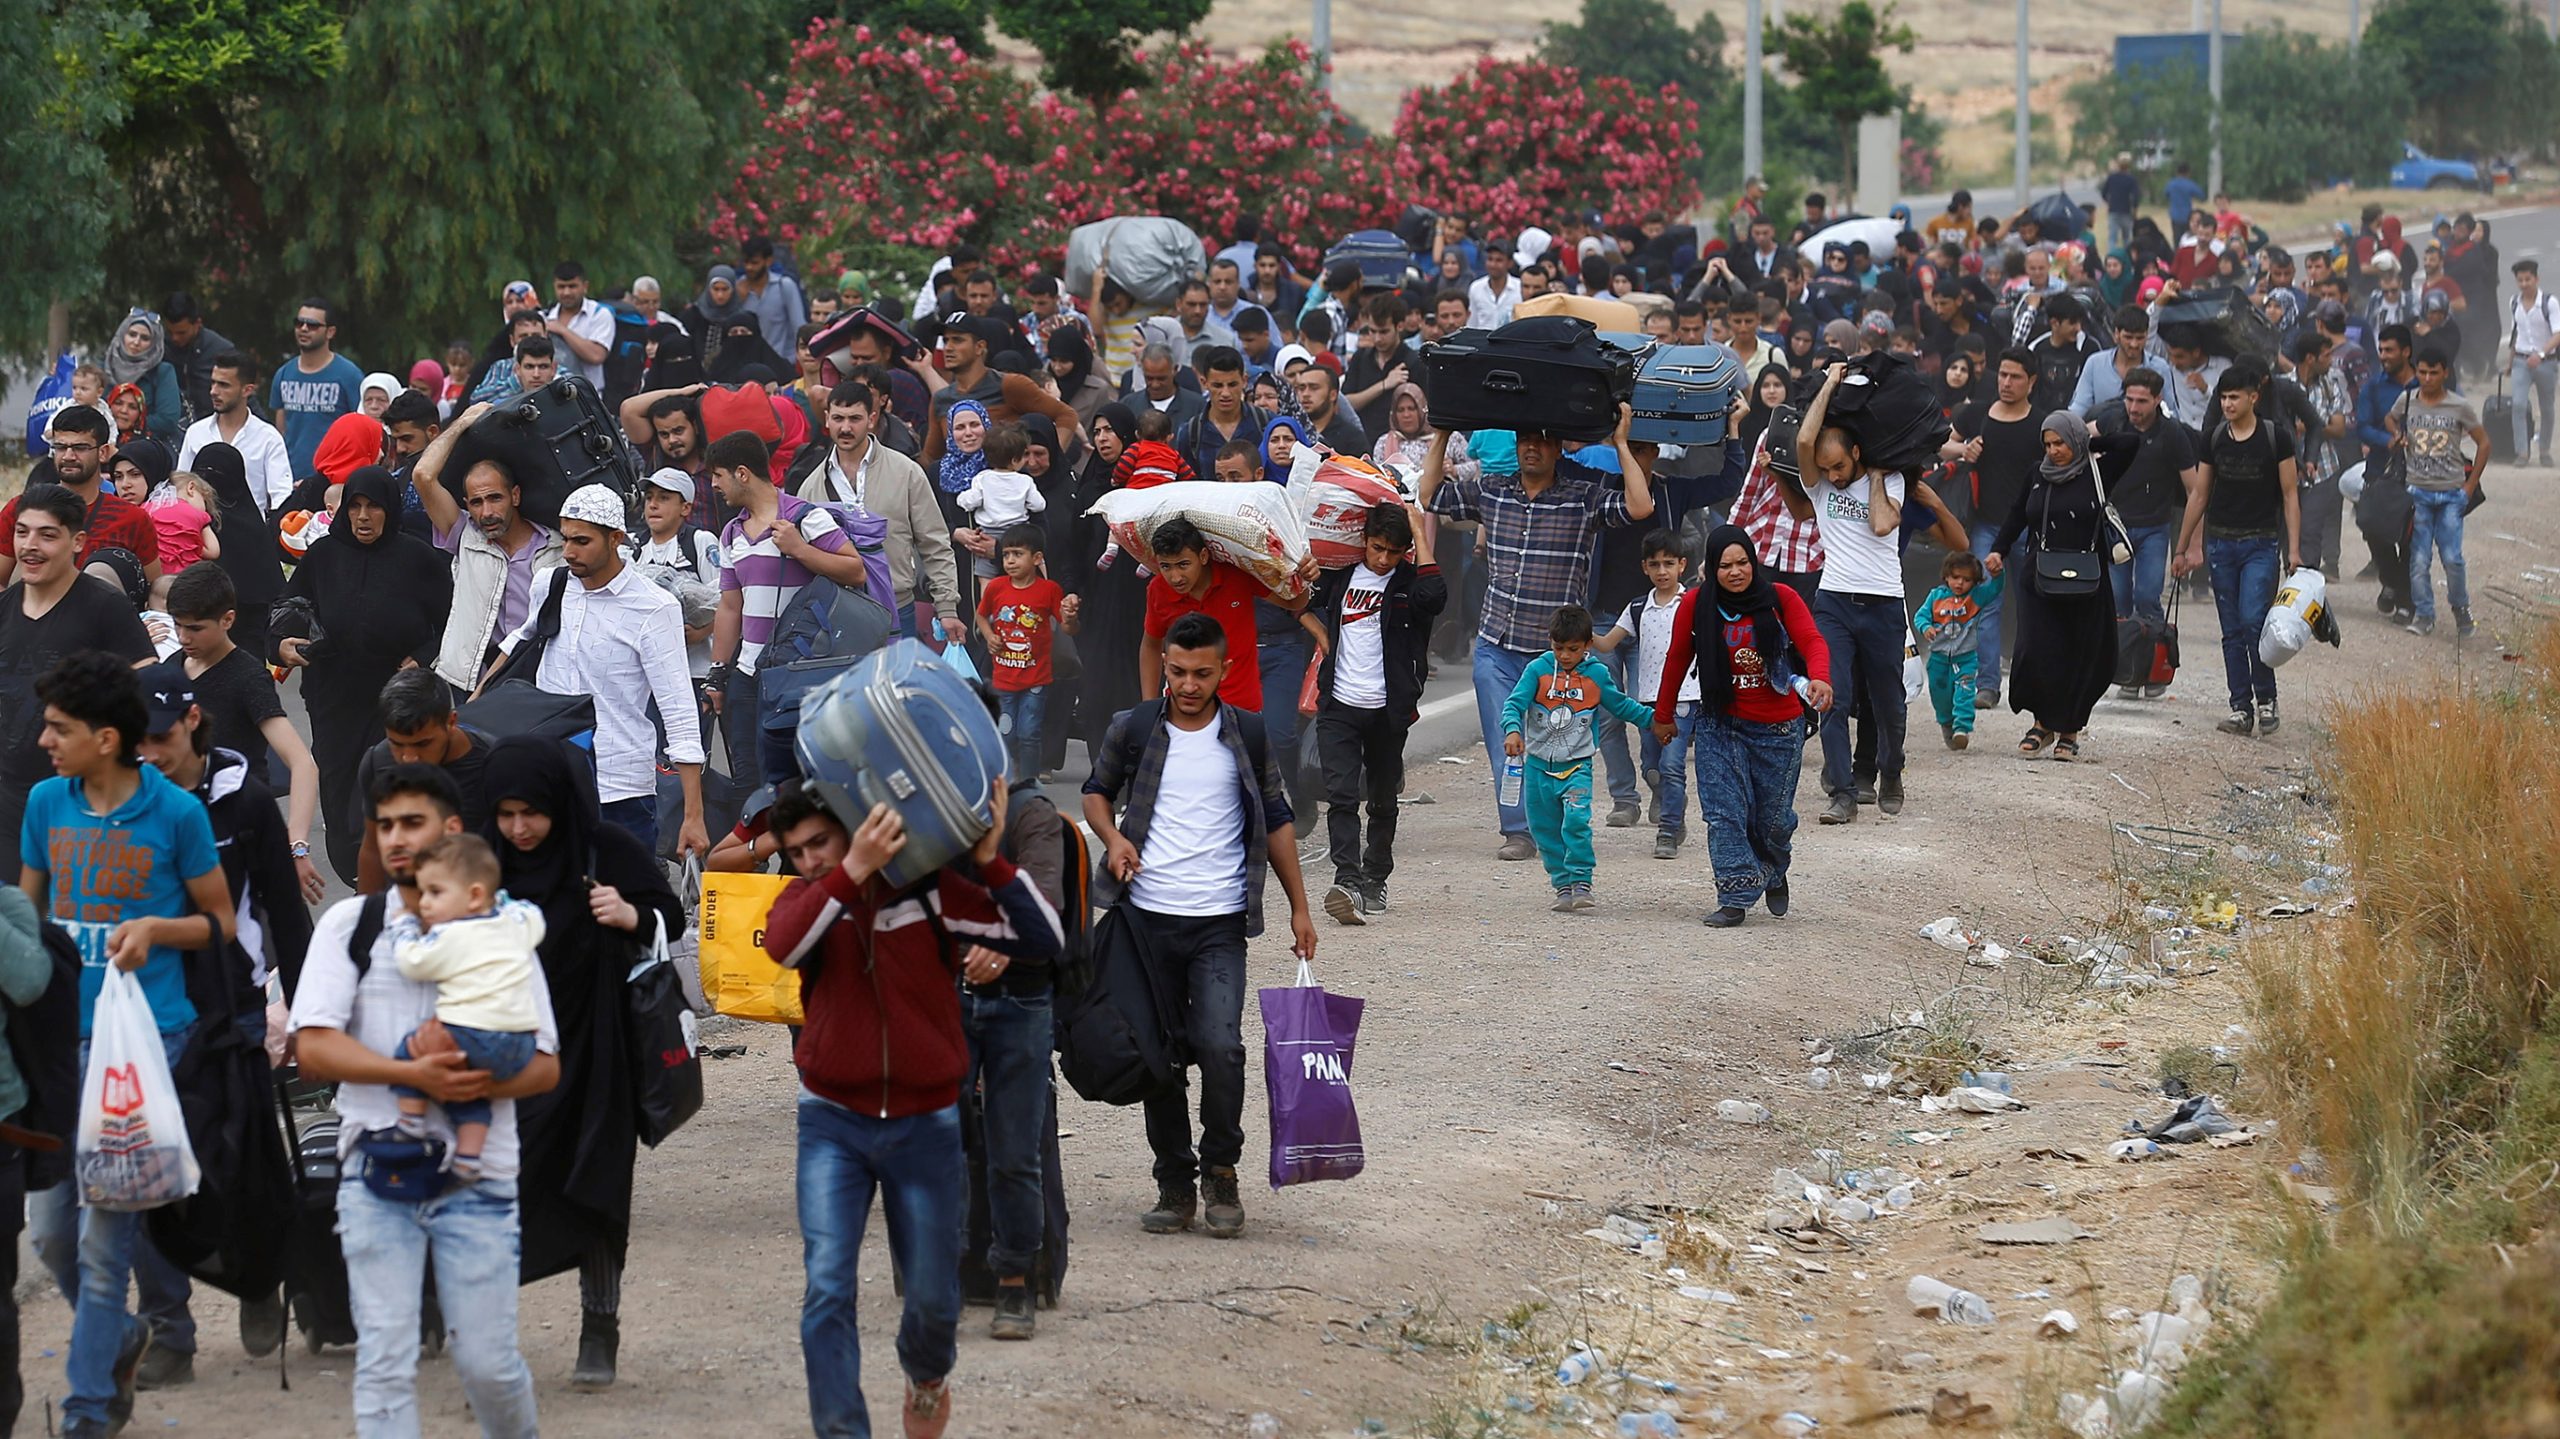 Πάνω από 1 εκατομμύριο Σύρους θέλει να εγκαταστήσει η Άγκυρα στη βόρεια Συρία